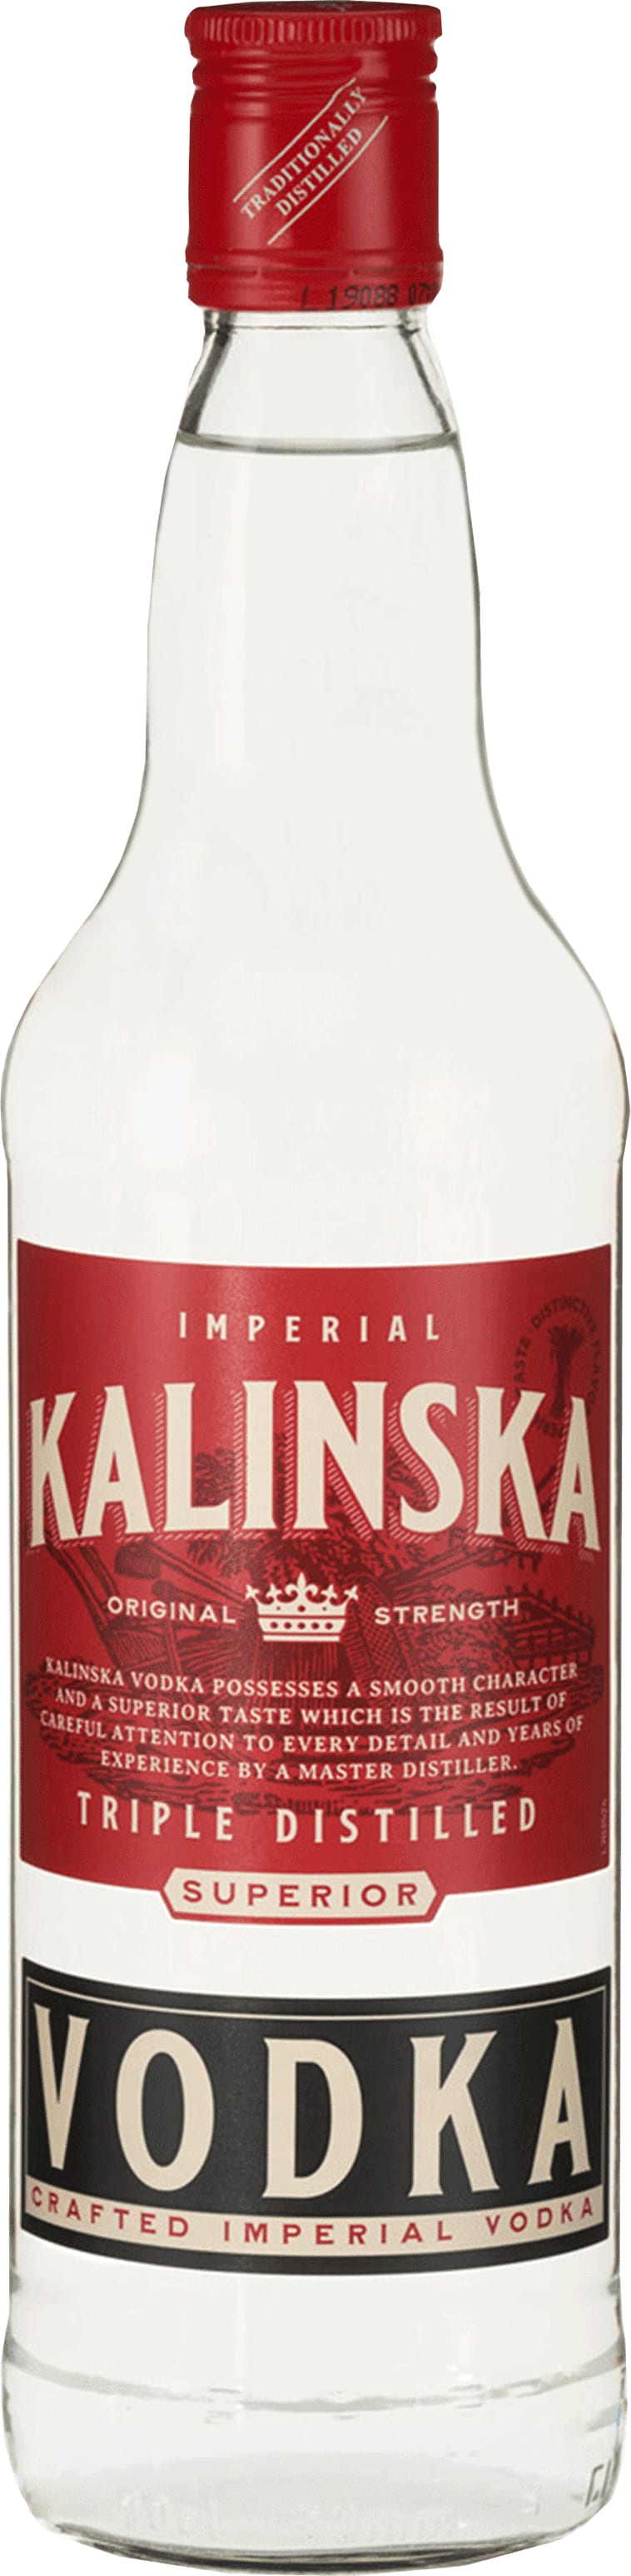 Kalinska Vodka 70cl NV - Buy Kalinska Wines from GREAT WINES DIRECT wine shop